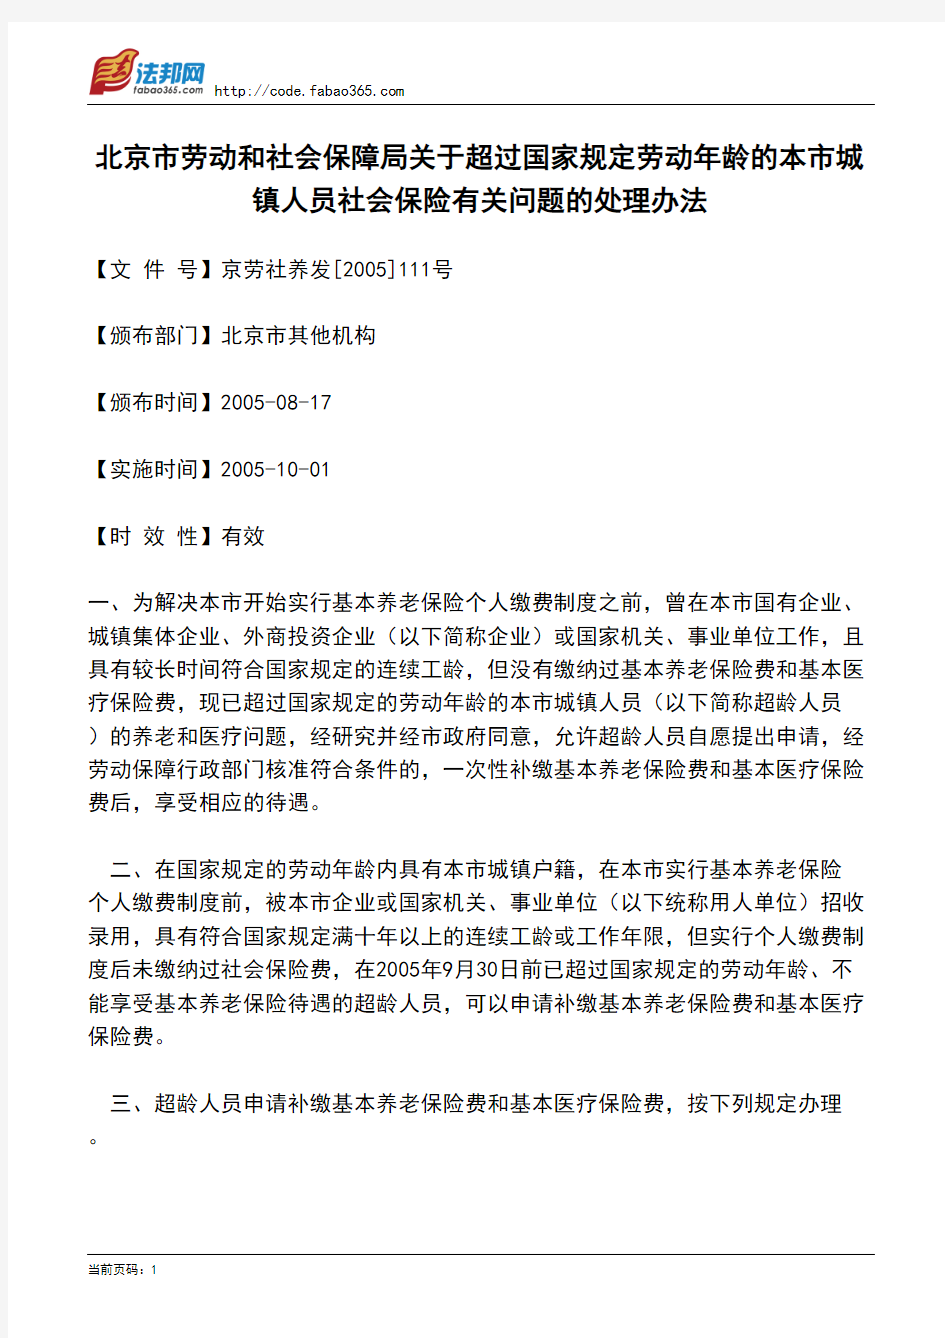 北京市劳动和社会保障局关于超过国家规定劳动年龄的本市城镇人员社会保险有关问题的处理办法